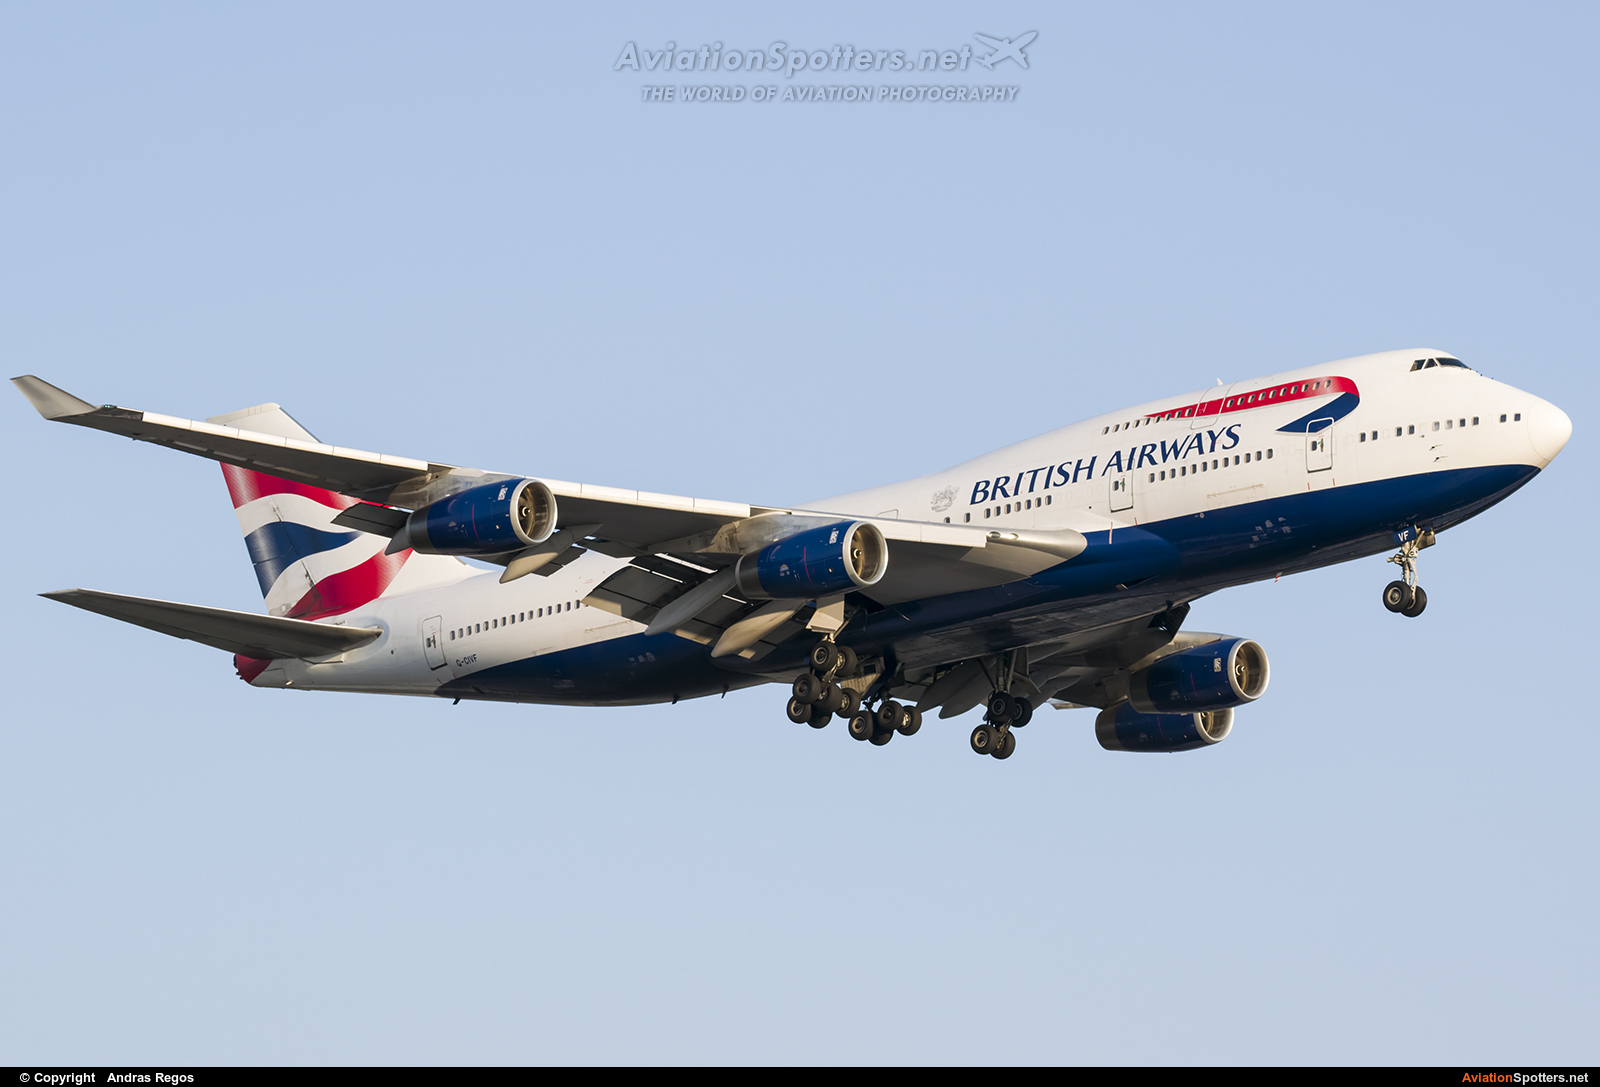 British Airways  -  747-400  (G-CIVF) By Andras Regos (regos)